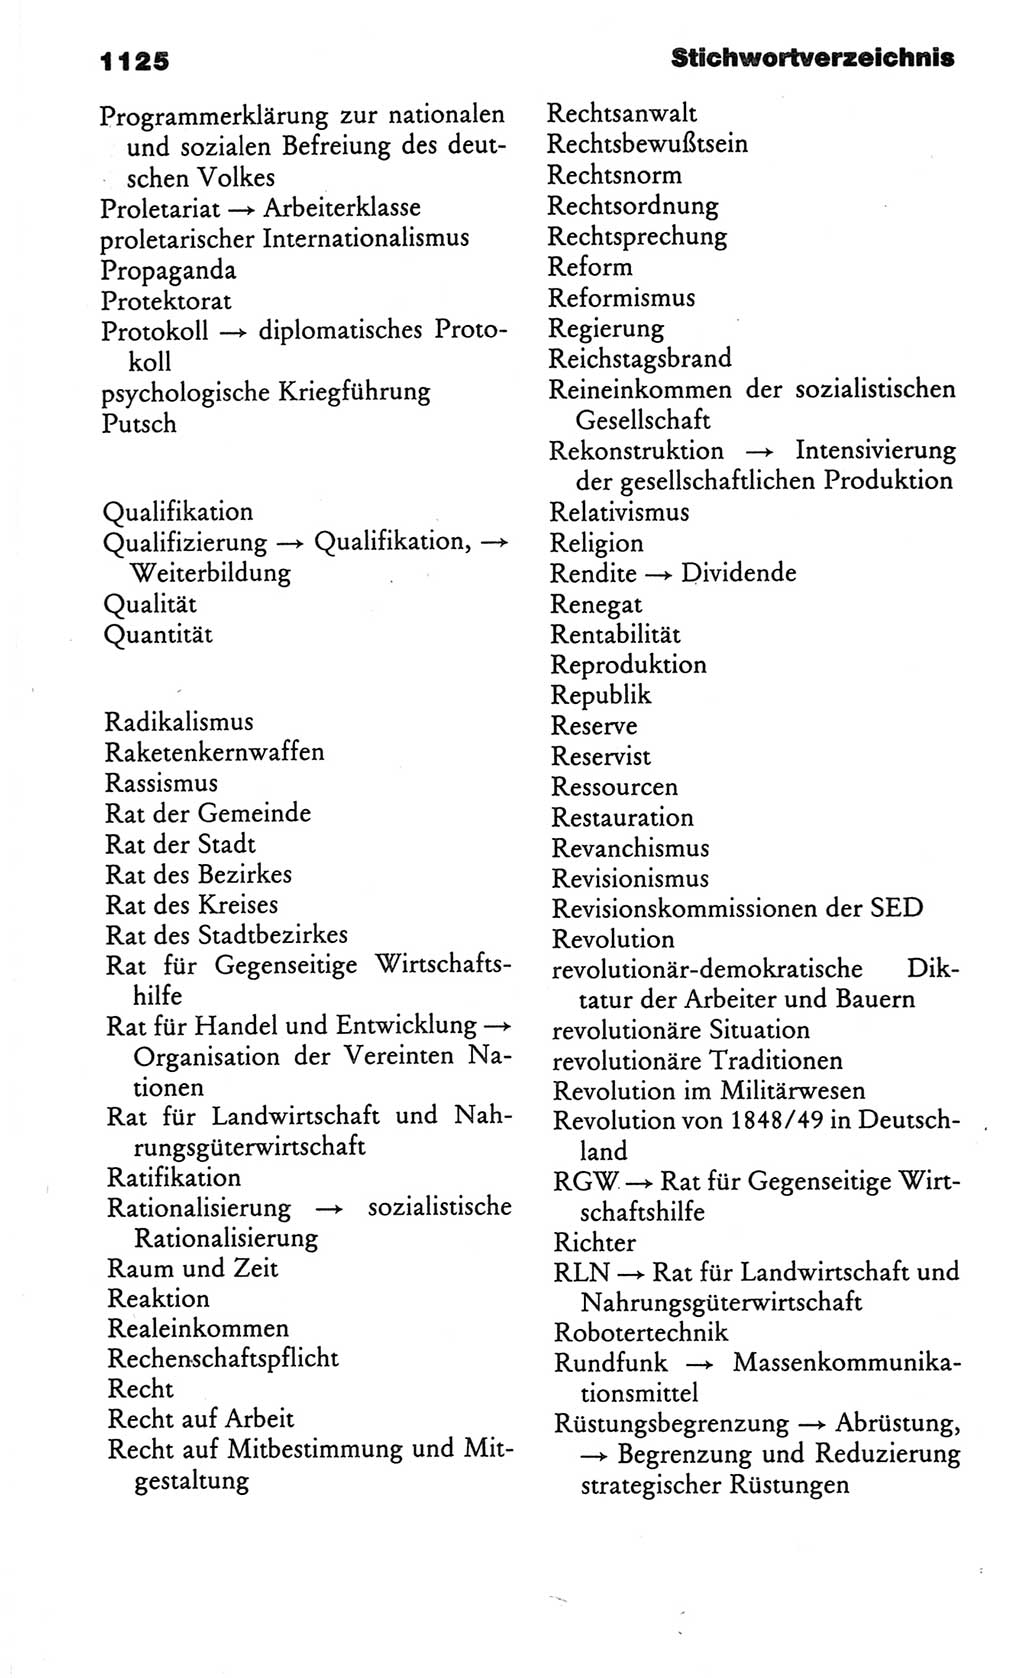 Kleines politisches Wörterbuch [Deutsche Demokratische Republik (DDR)] 1986, Seite 1125 (Kl. pol. Wb. DDR 1986, S. 1125)